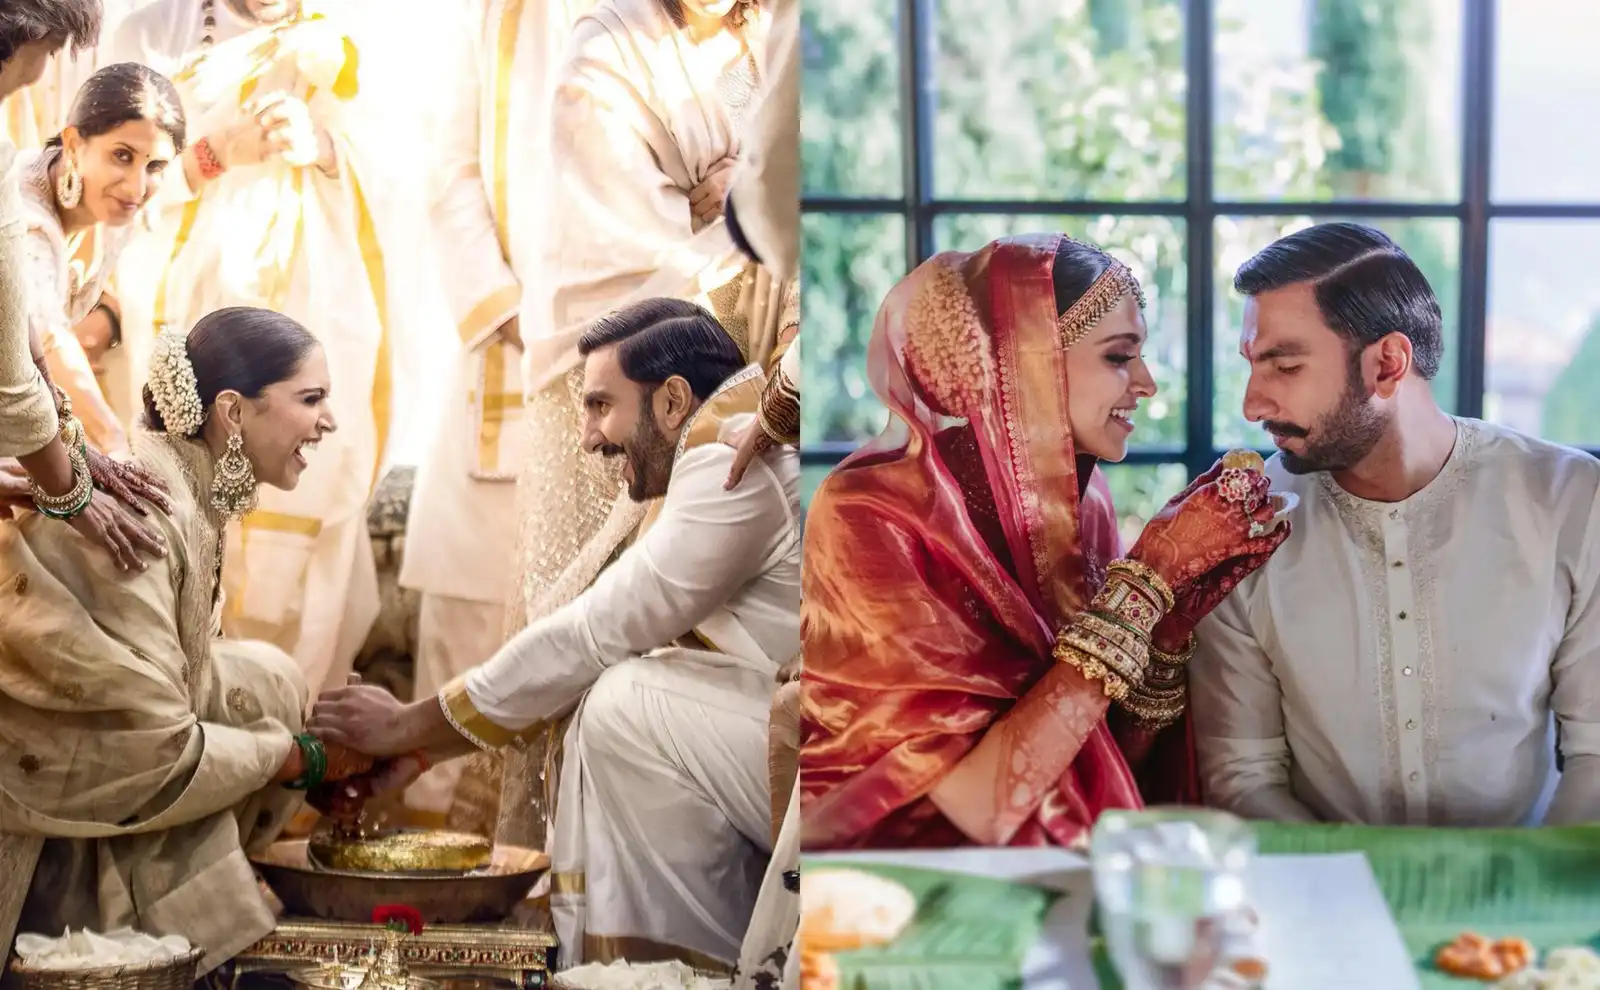 DeepVeer Wedding: The Pictures From Deepika-Ranveer's Wedding Are Overwhelmingly Beautiful!